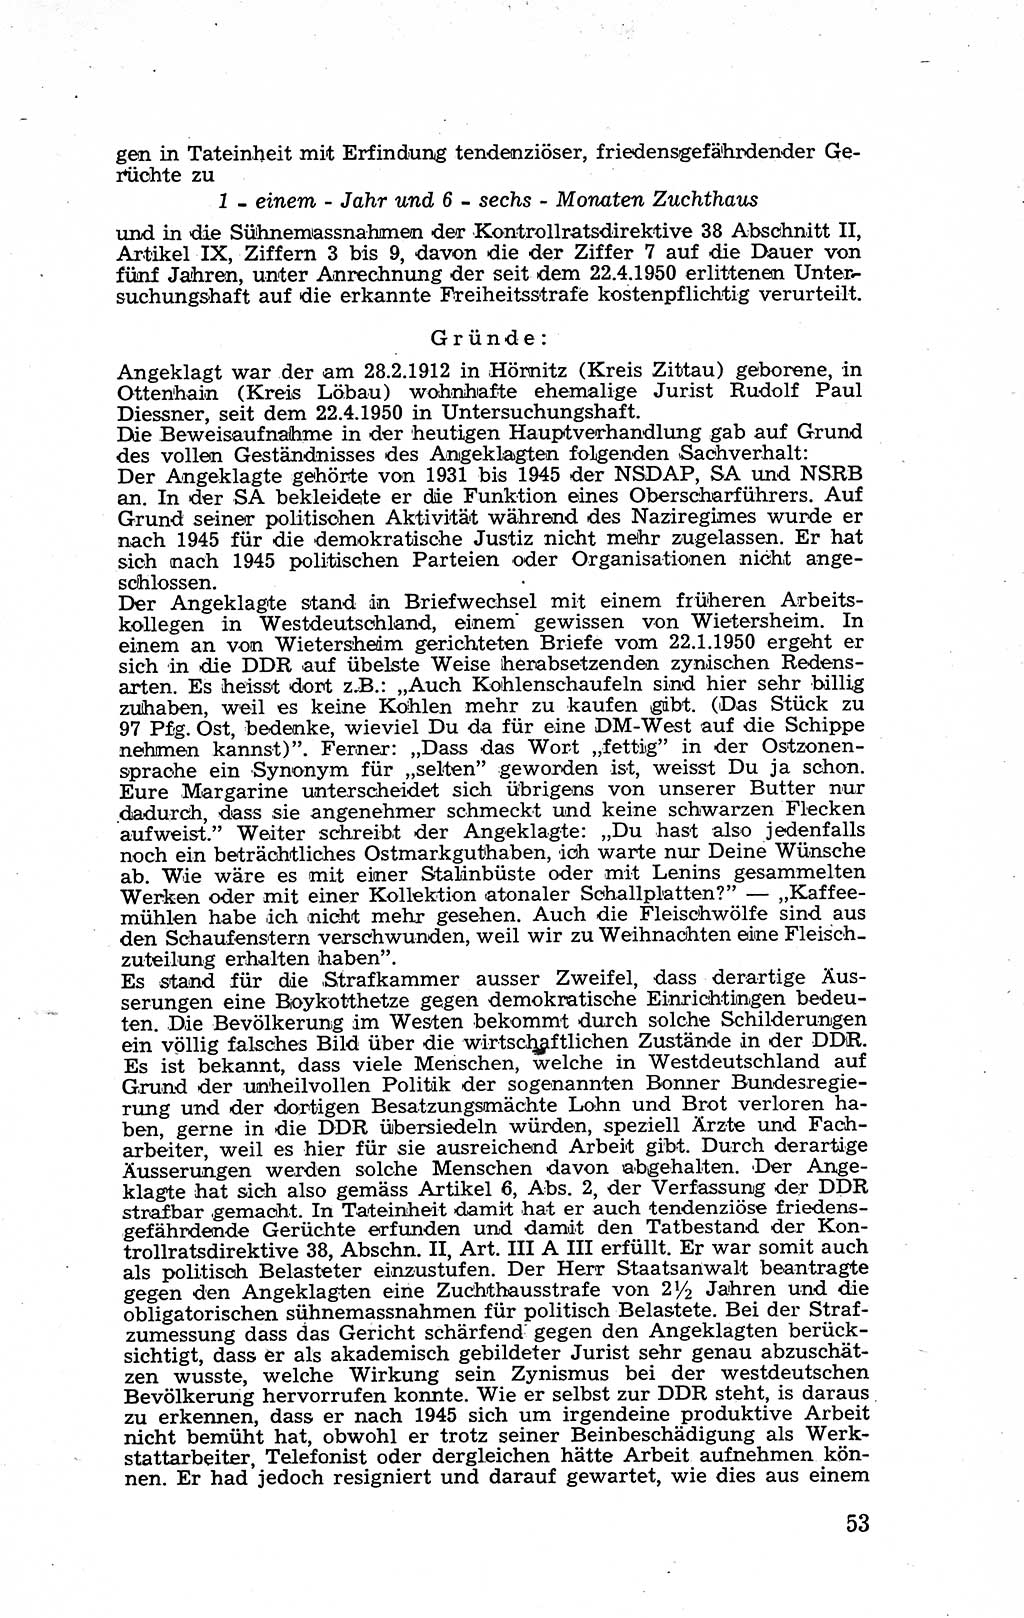 Recht in Fesseln, Dokumente, Internationale Juristen-Kommission [Bundesrepublik Deutschland (BRD)] 1955, Seite 53 (R. Dok. IJK BRD 1955, S. 53)